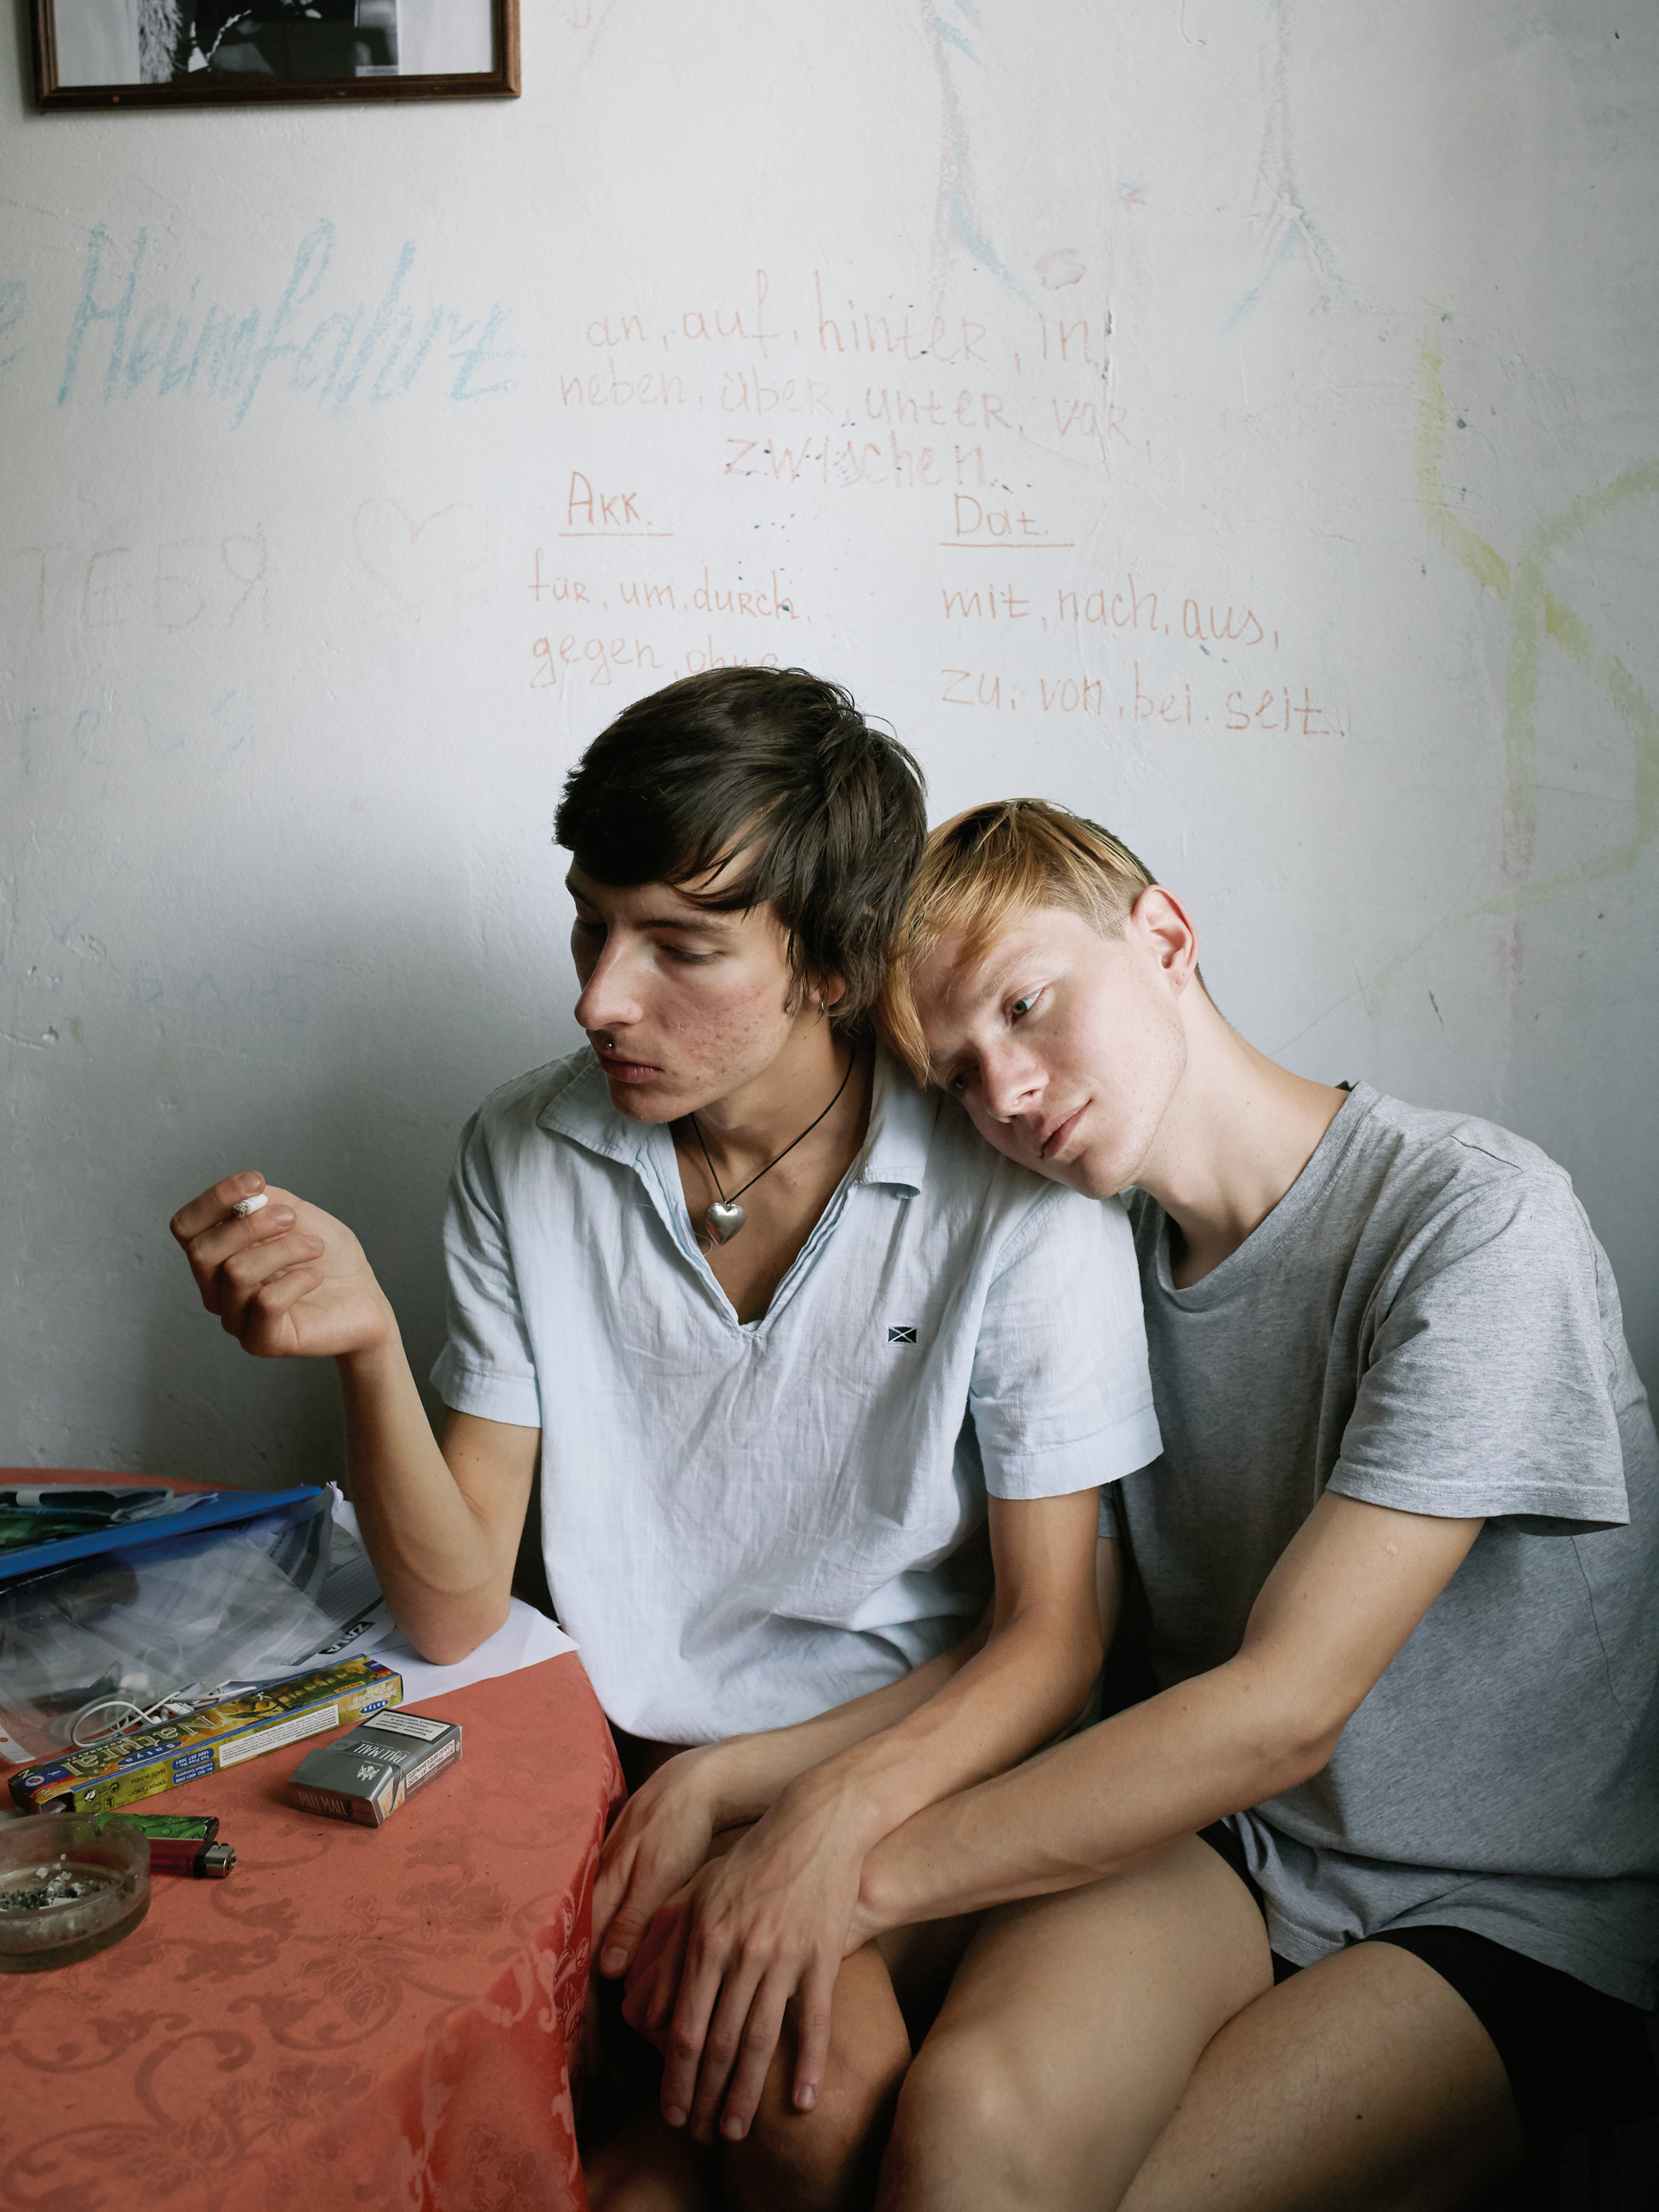 Fotografie zwei junge Männer aneinandergelehnt am Tisch sitzend